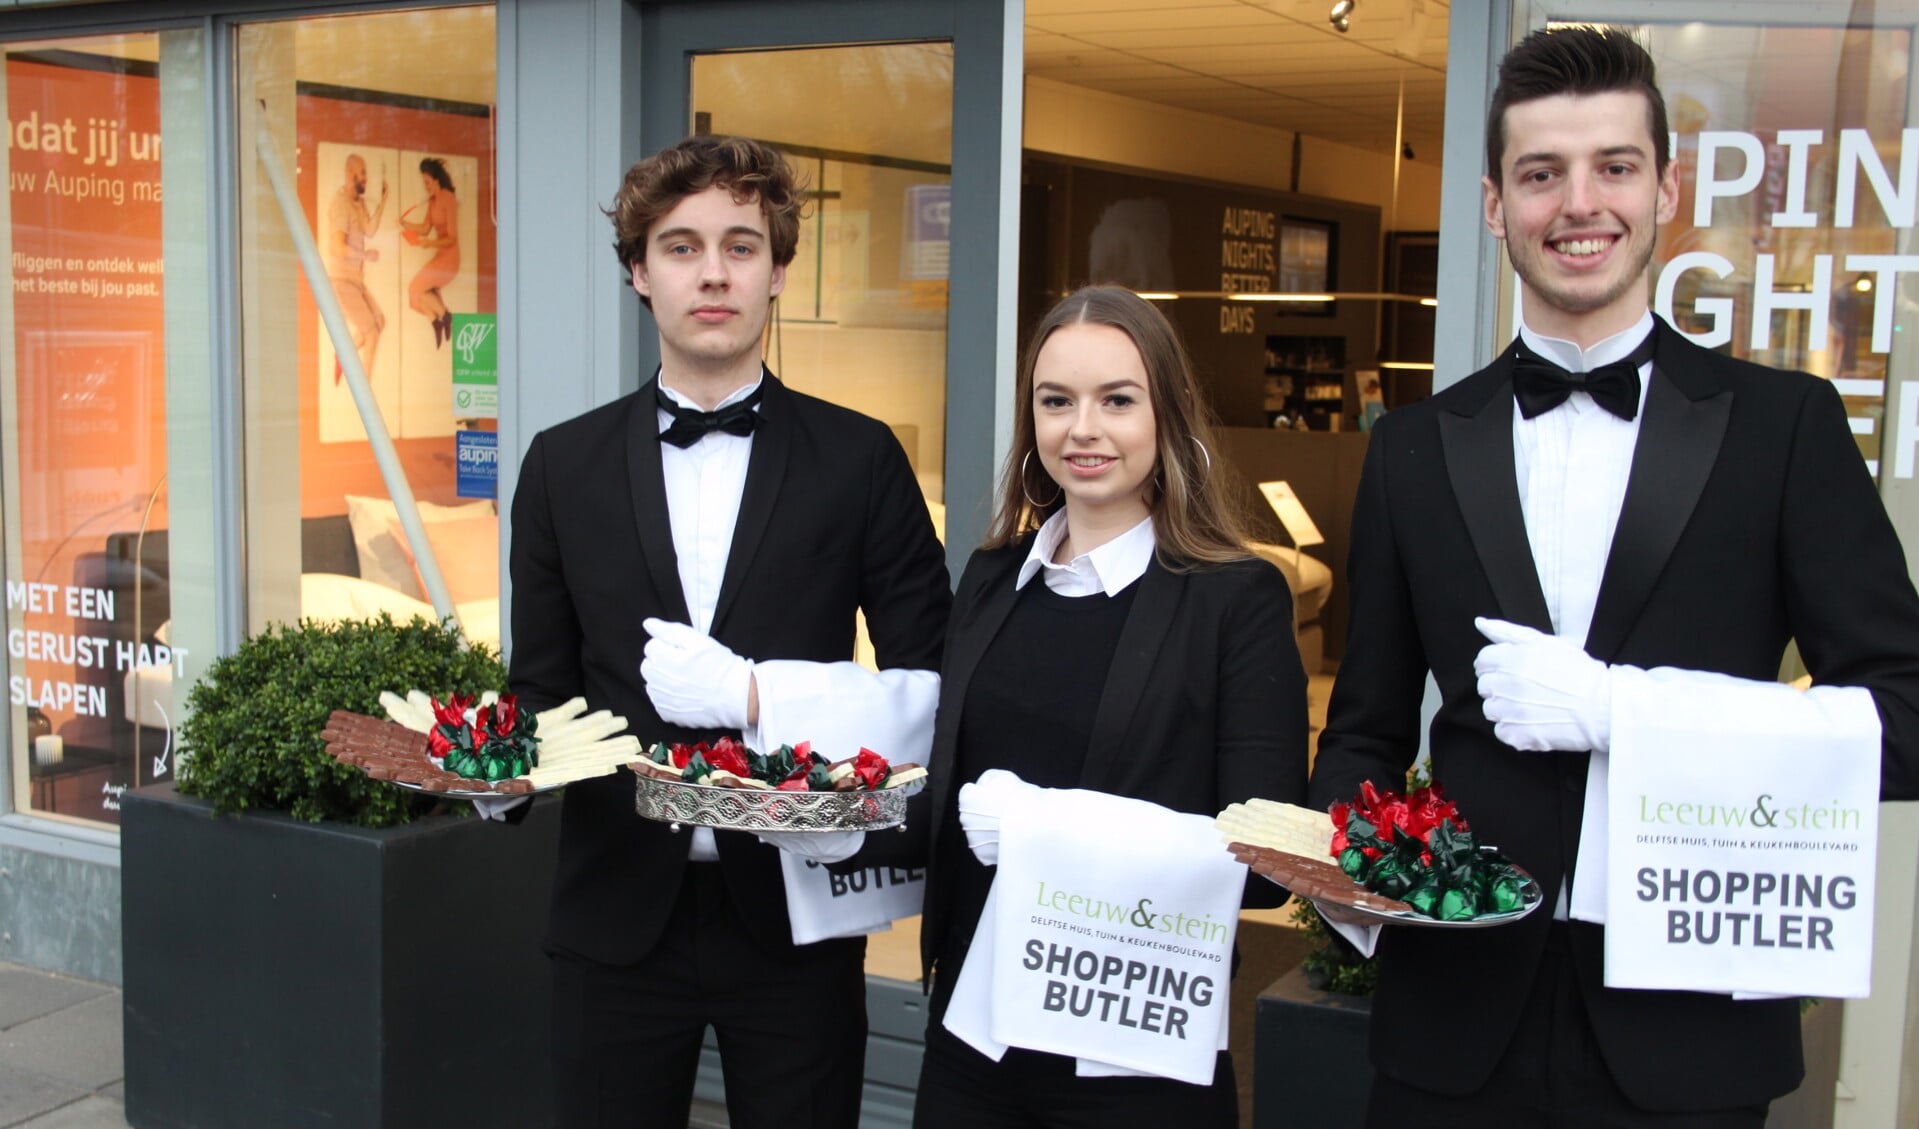 De Shopping Butlers zijn vrijdag 29 december weer te vinden op Leeuw&Stein. 